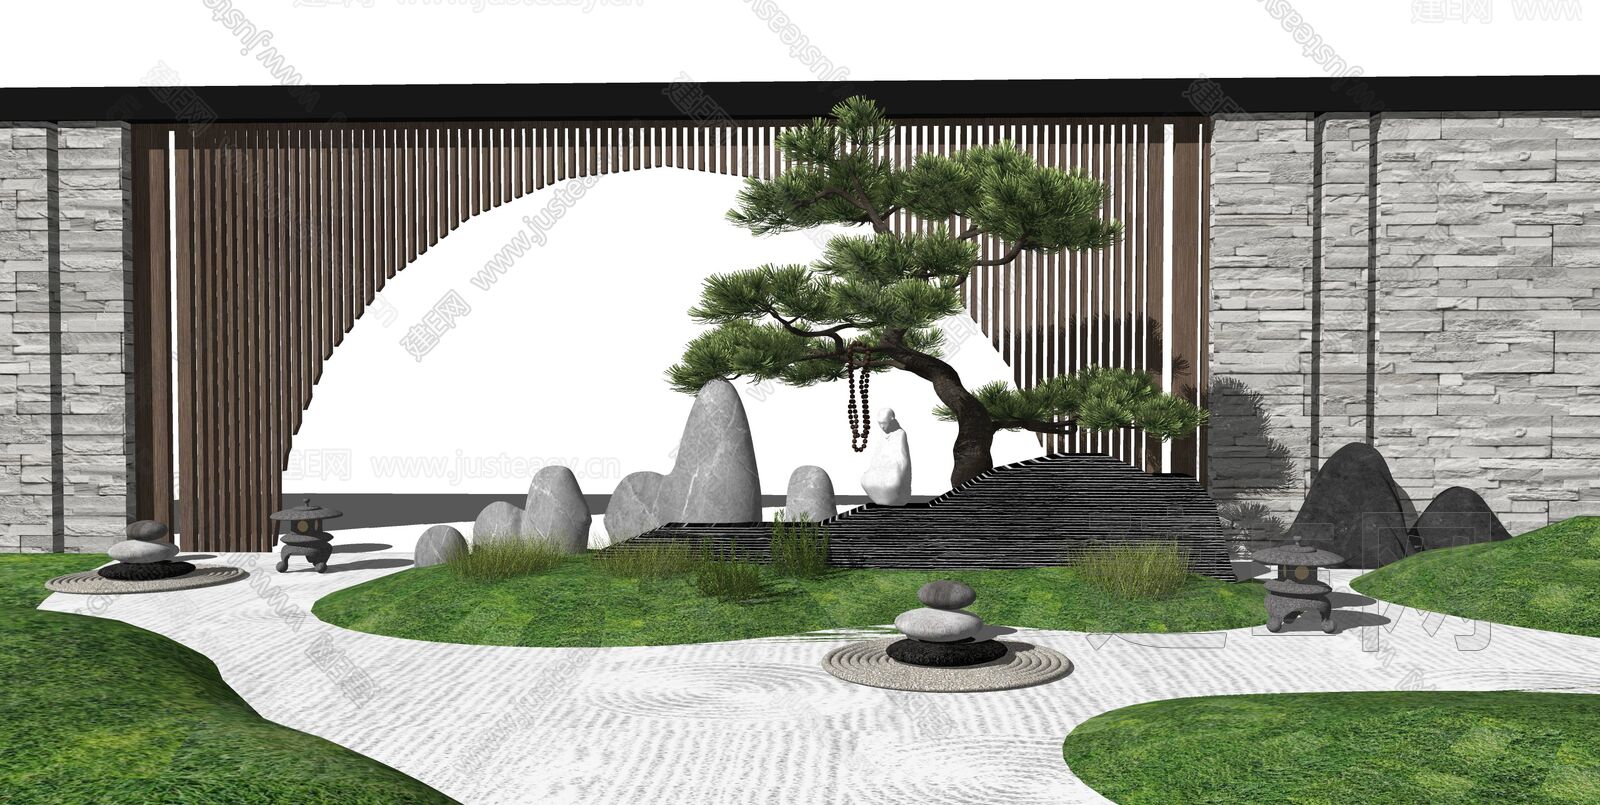 日式庭院景观sketchup模型